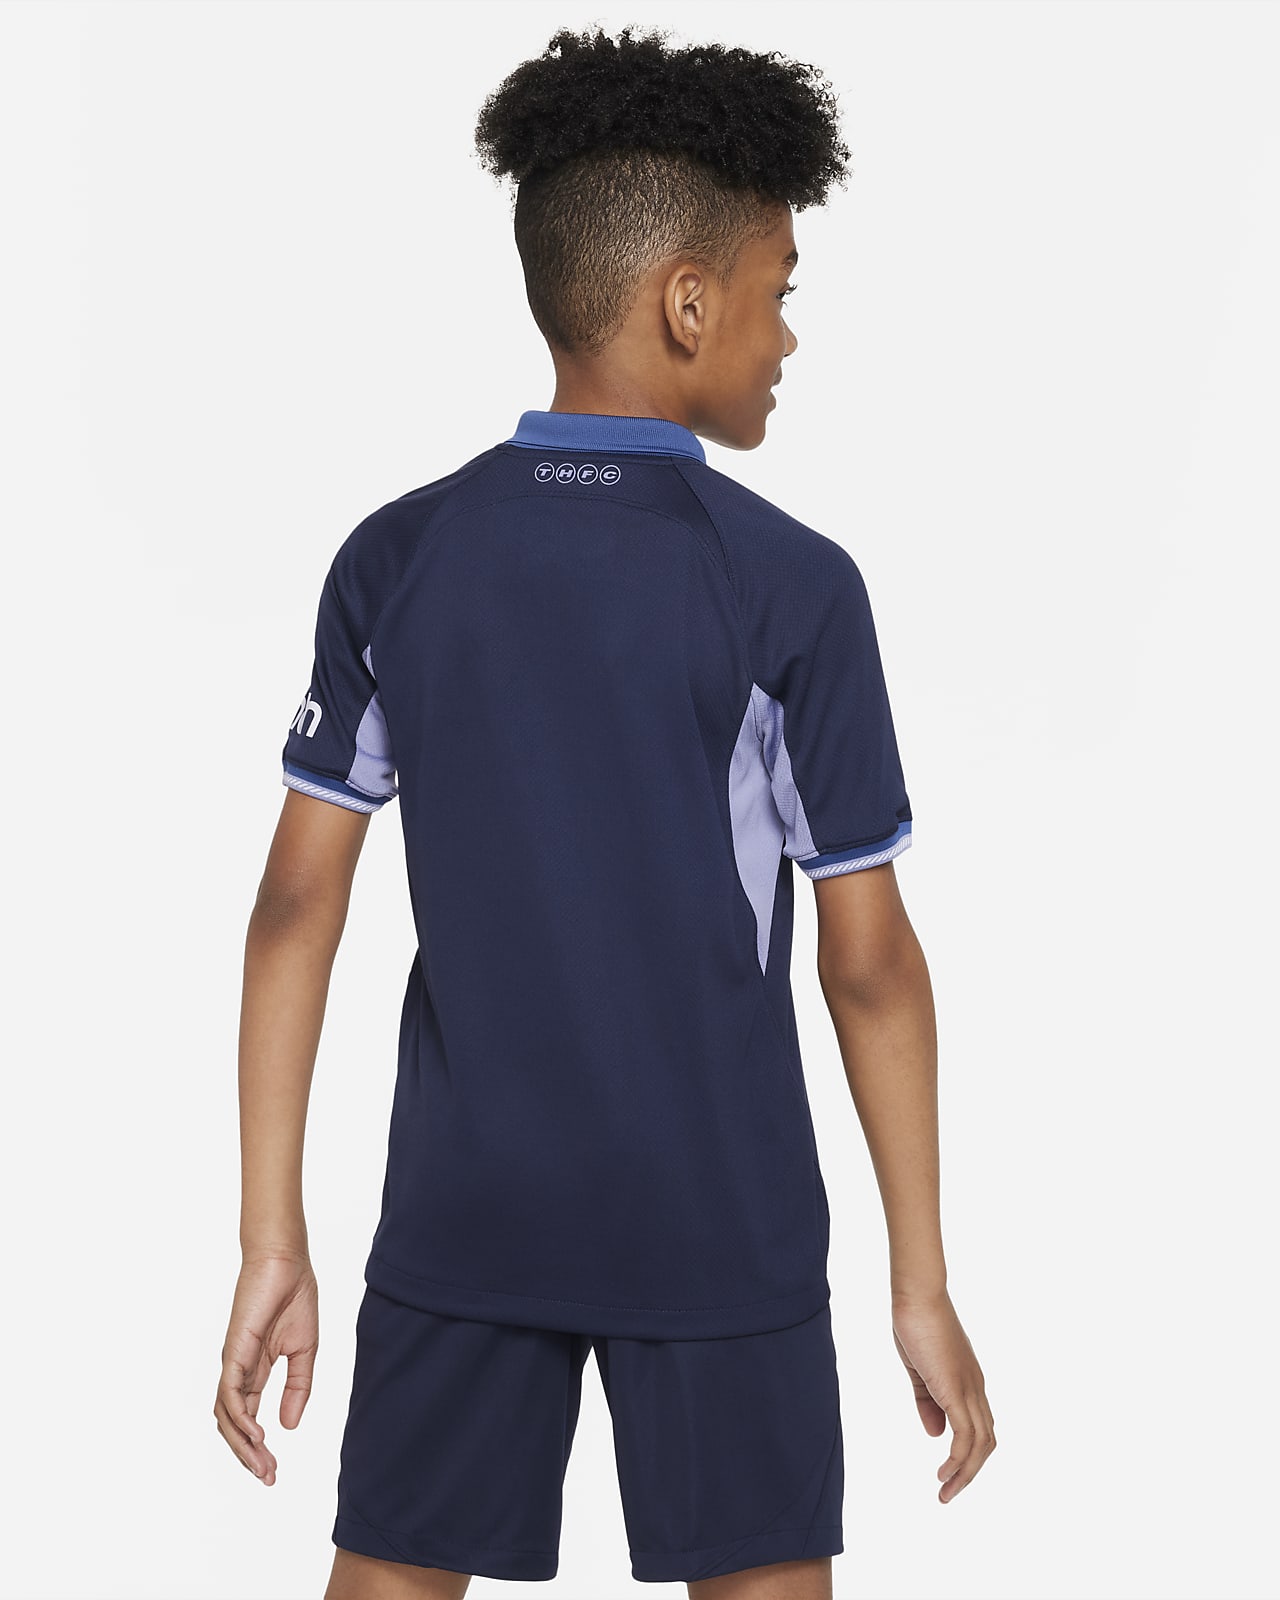 2022-2023 Tottenham Away Shirt (Kids) (SON 7)